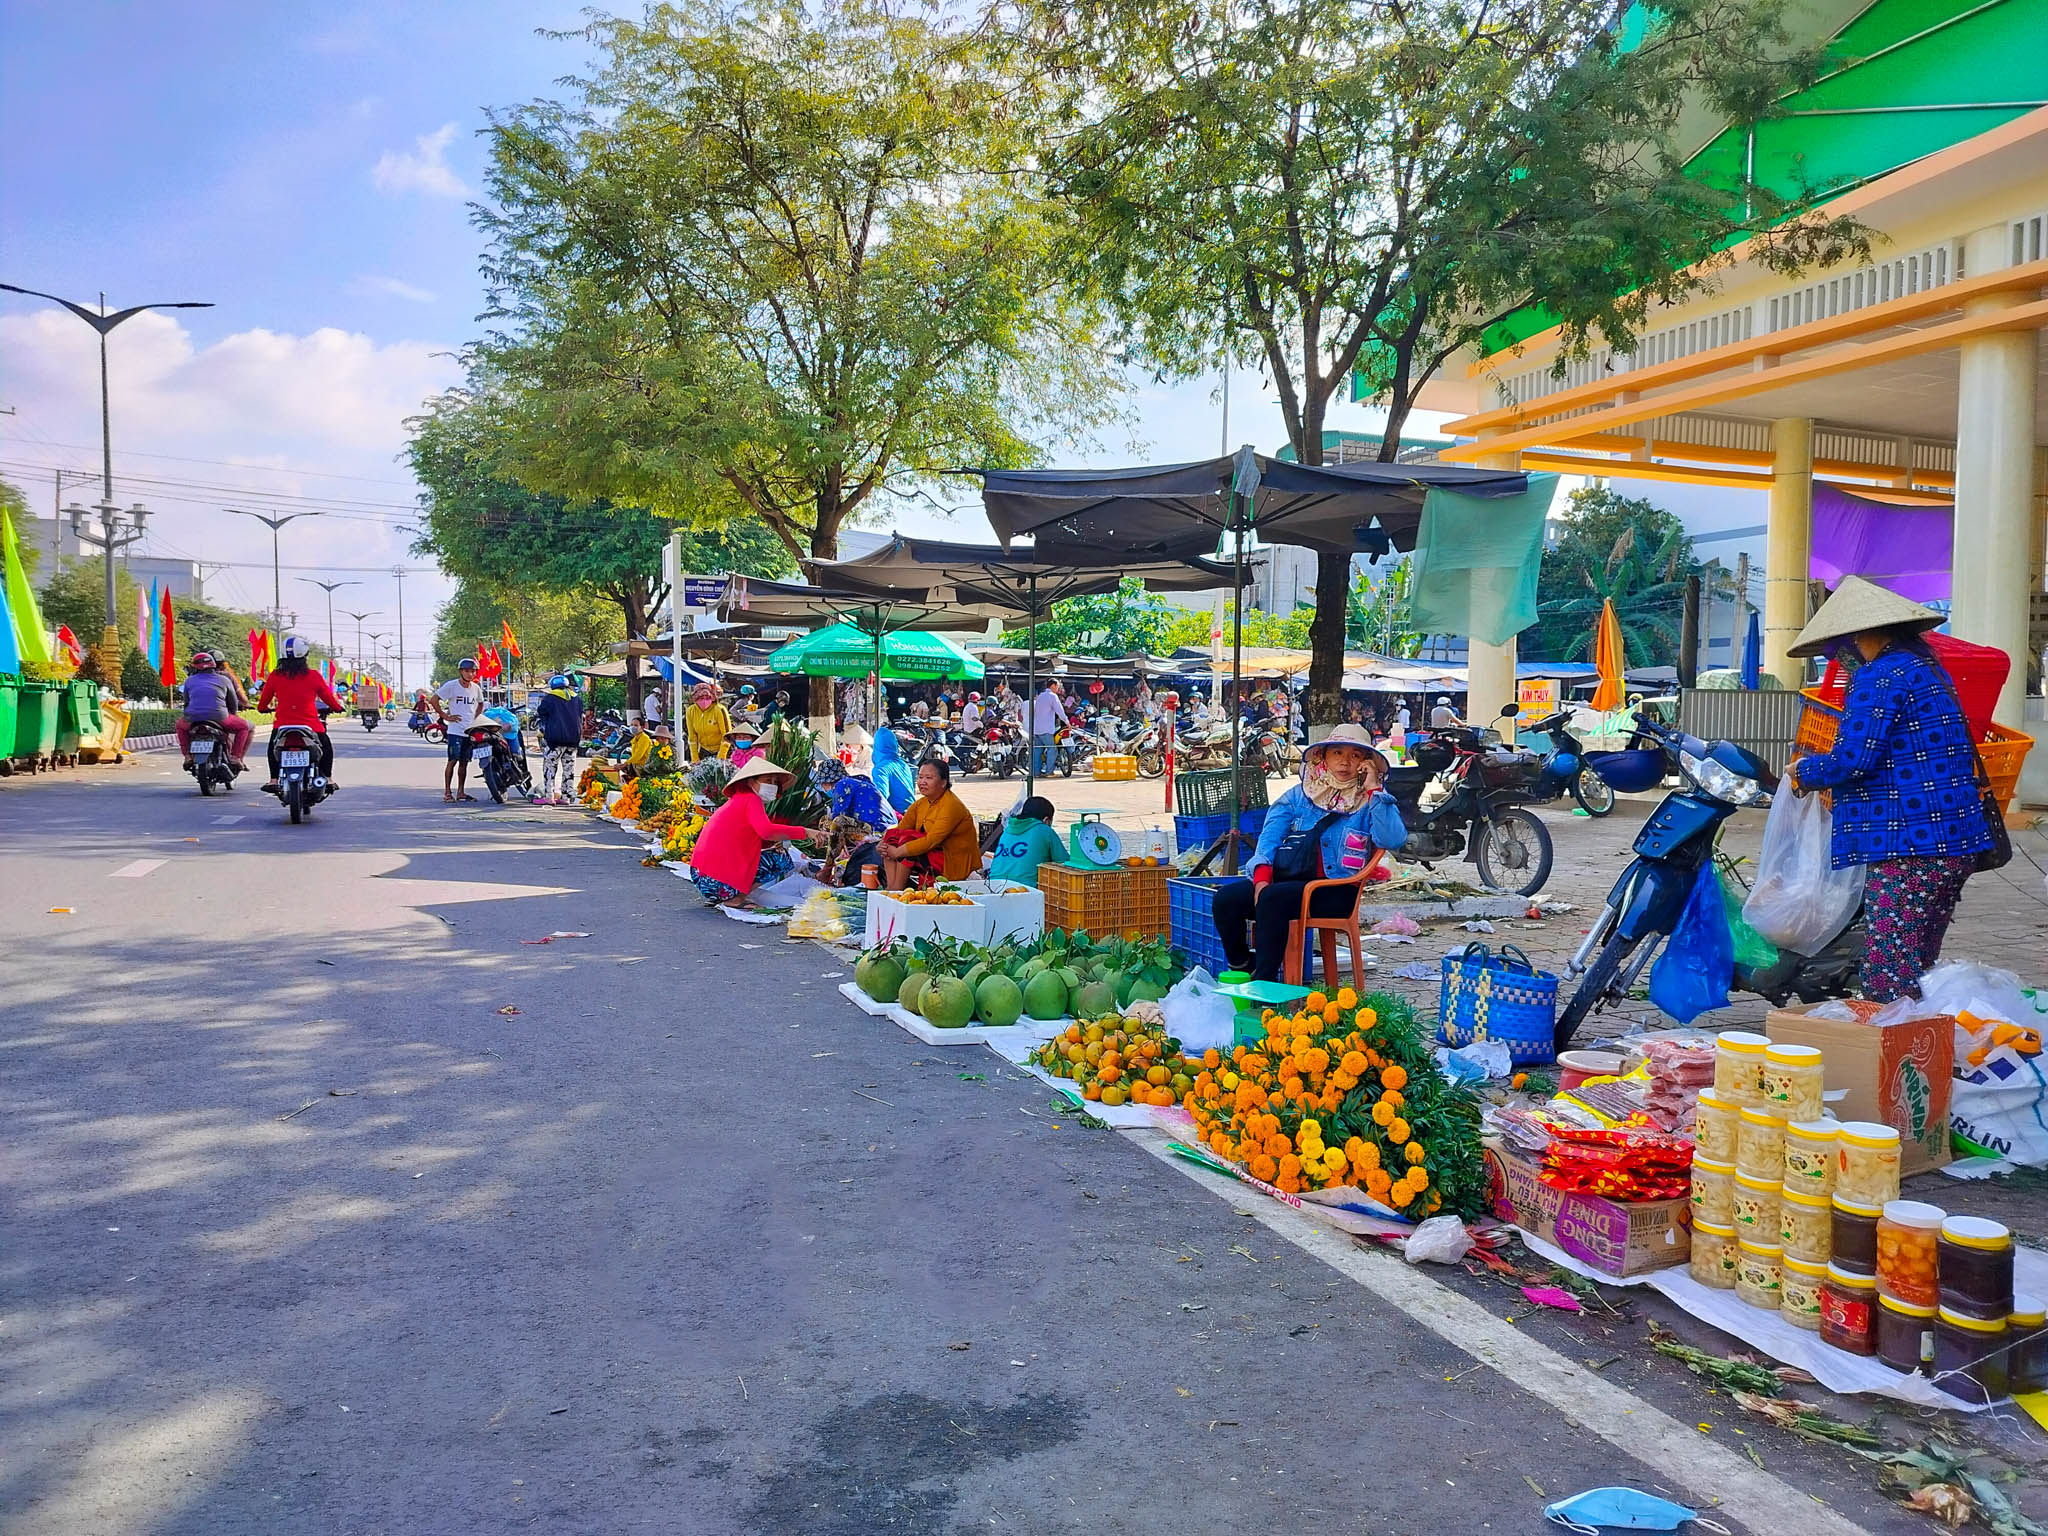 Hình ảnh khác lạ của khu chợ nổi tiếng Đã Nẵng giữa thời dịch Covid19